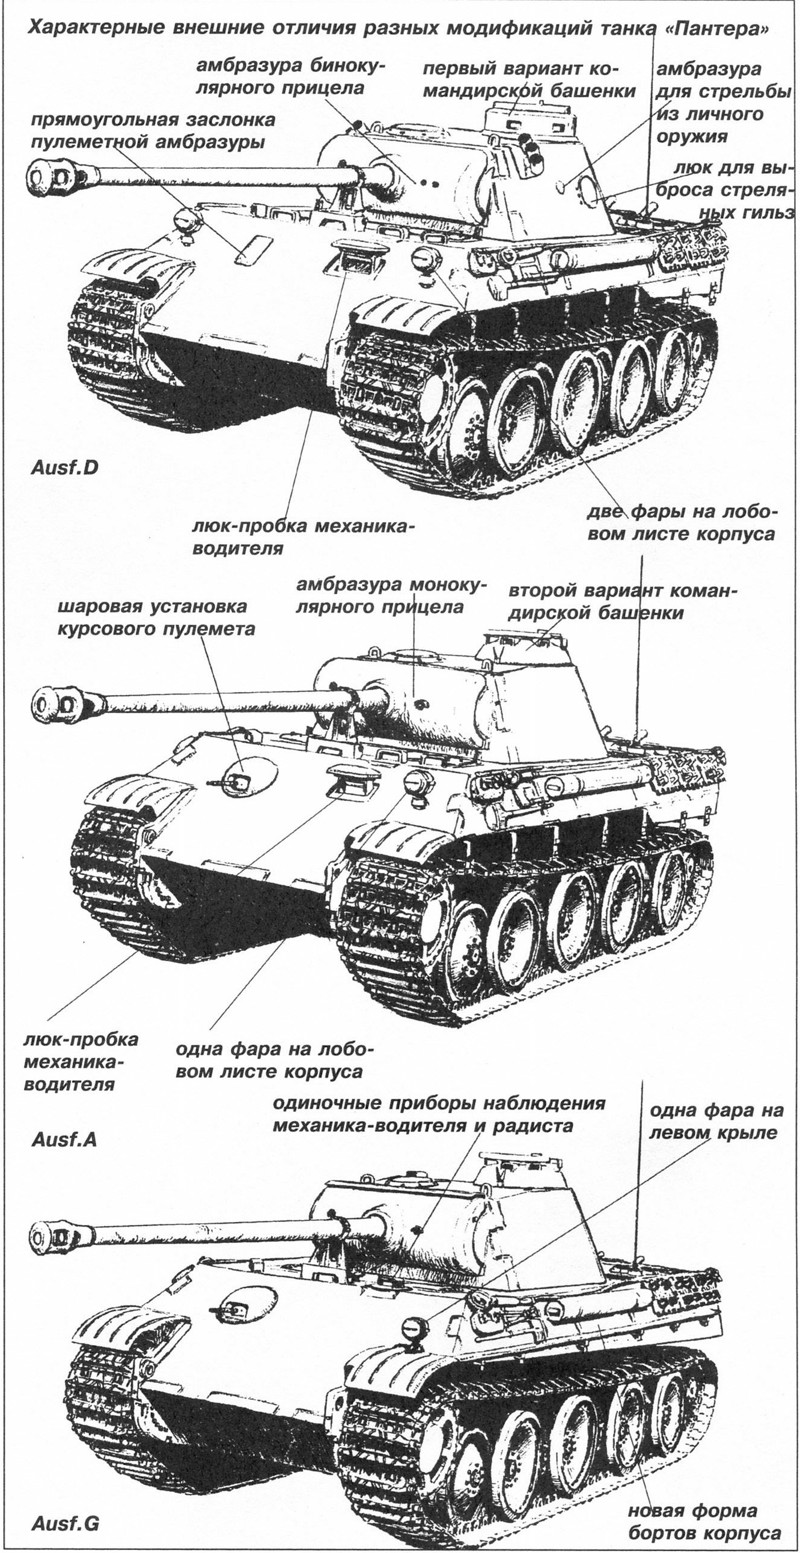 Panzer Vorwärts! Танки, вперед! Часть 6 Ausf А